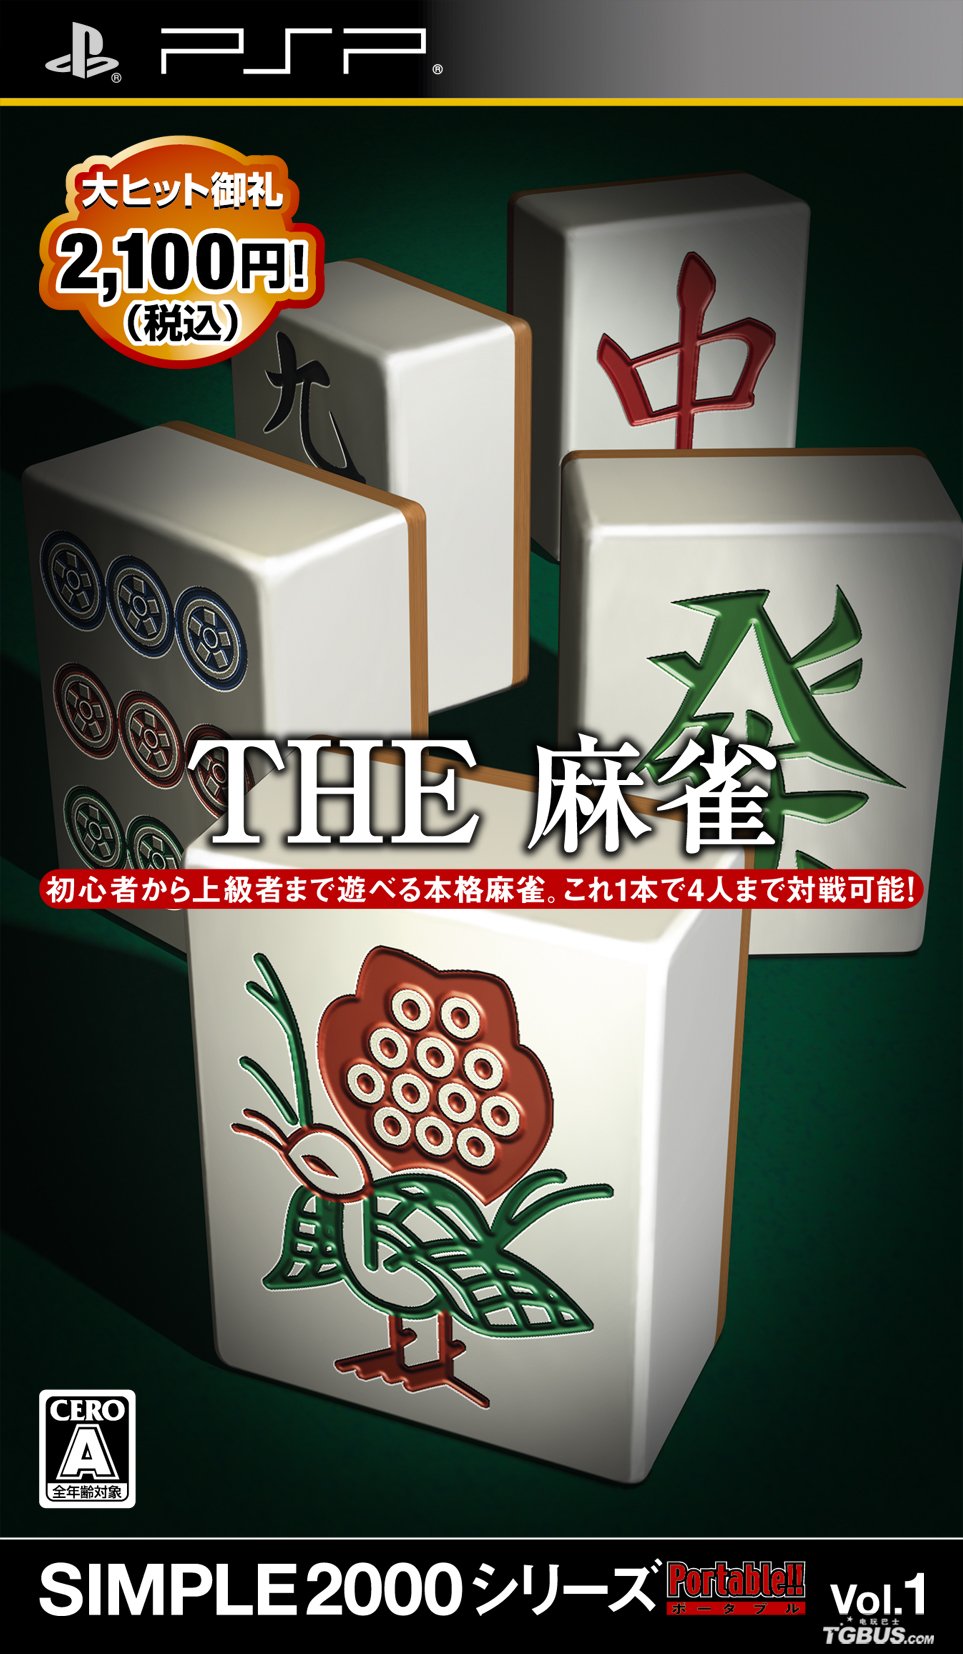 简单2000系列 Vol.1麻将 简体中文版下载